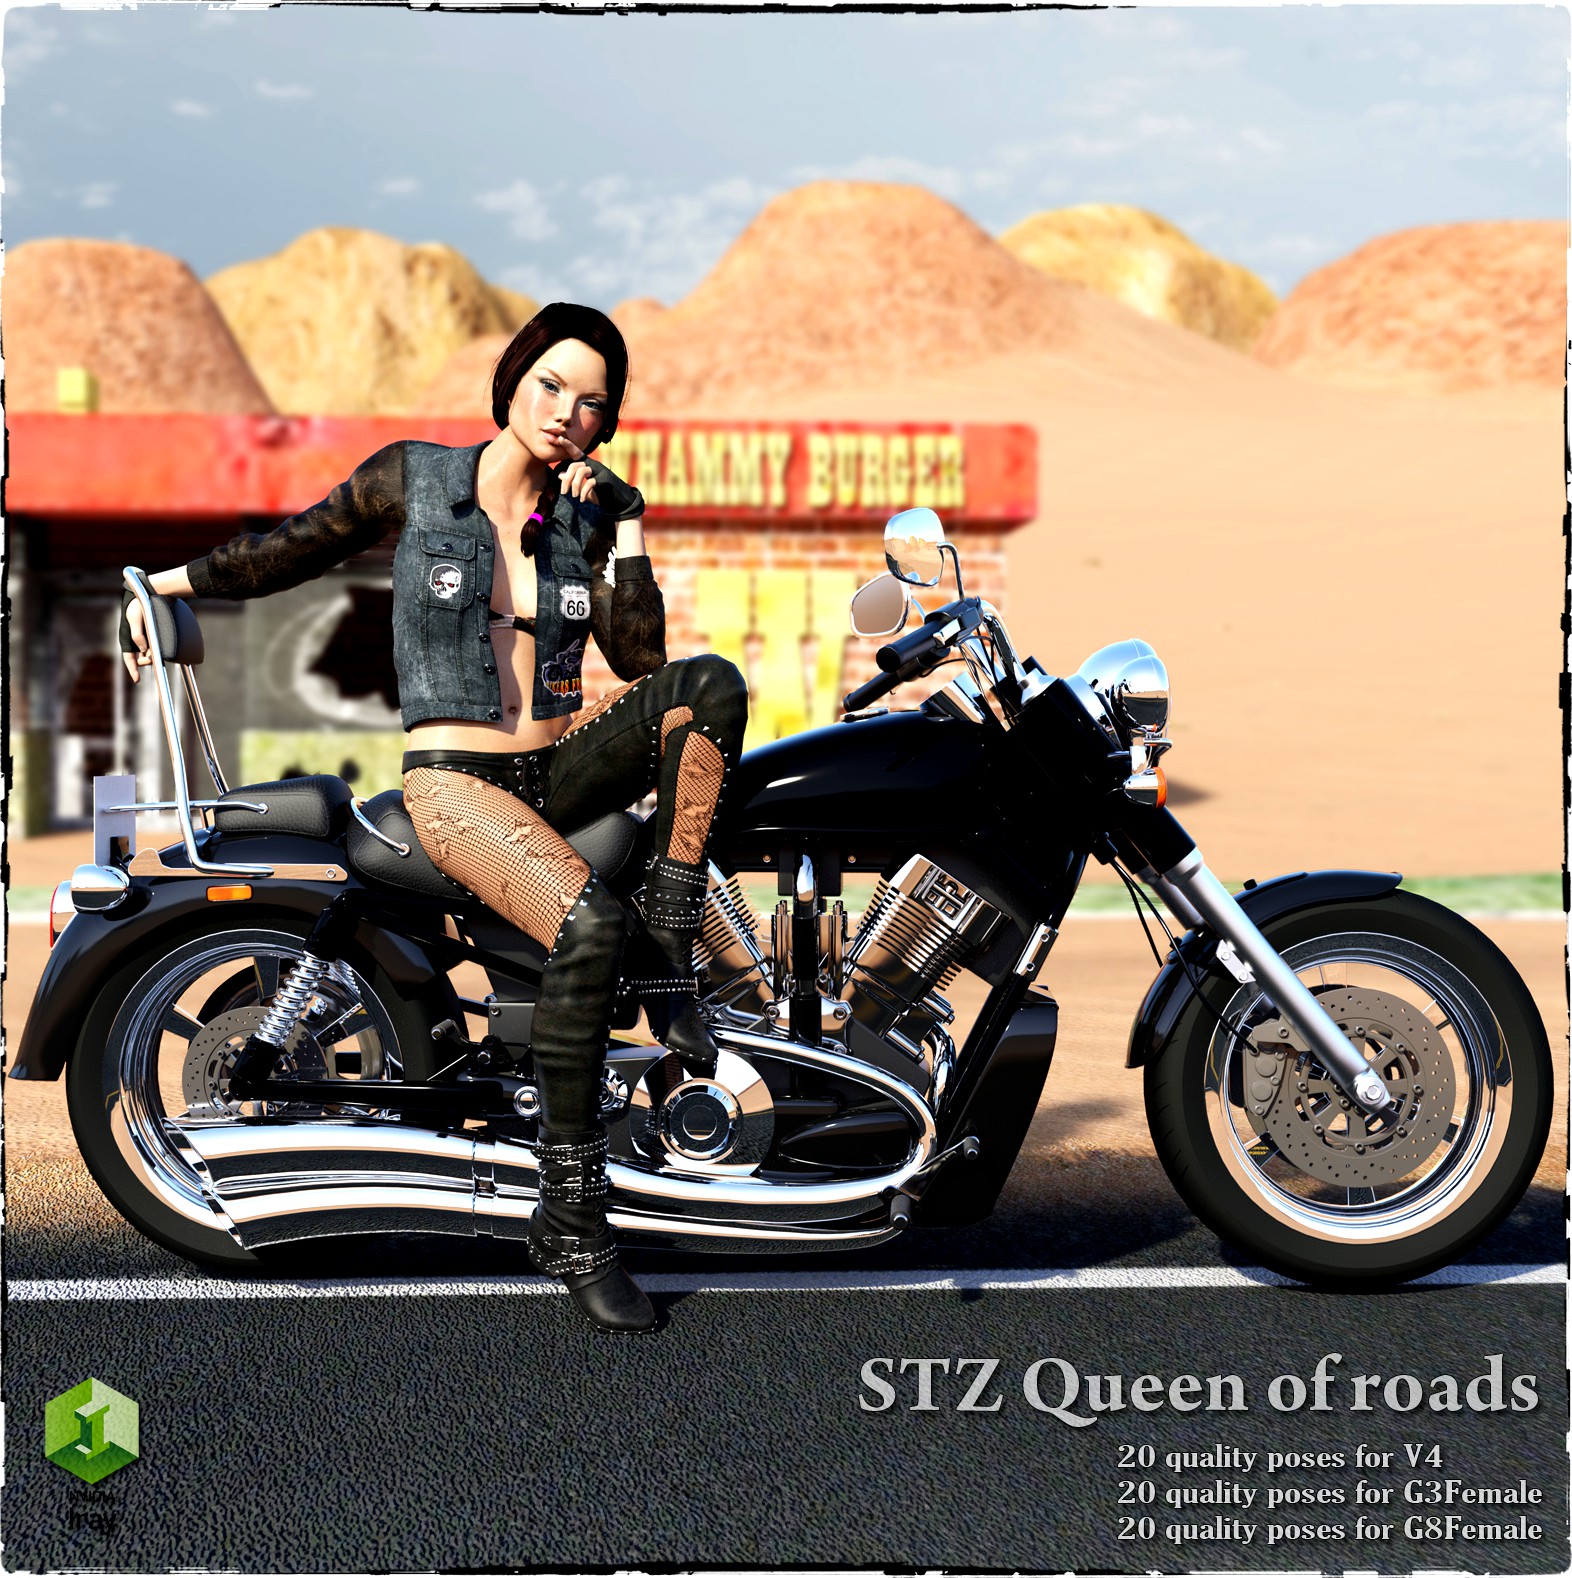 STZ Queen of roads